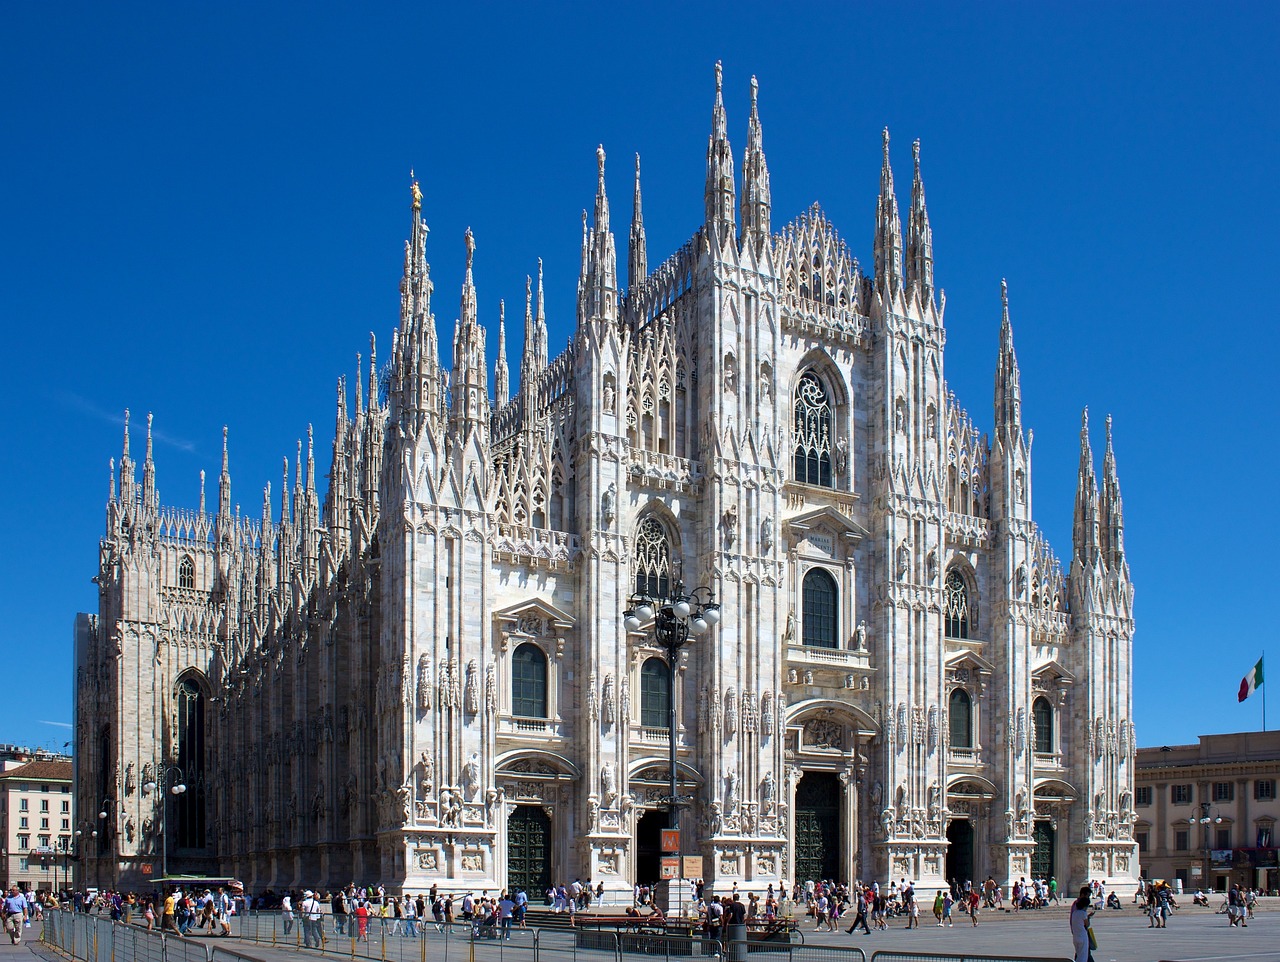 Cappella Musicale Duomo di Milano